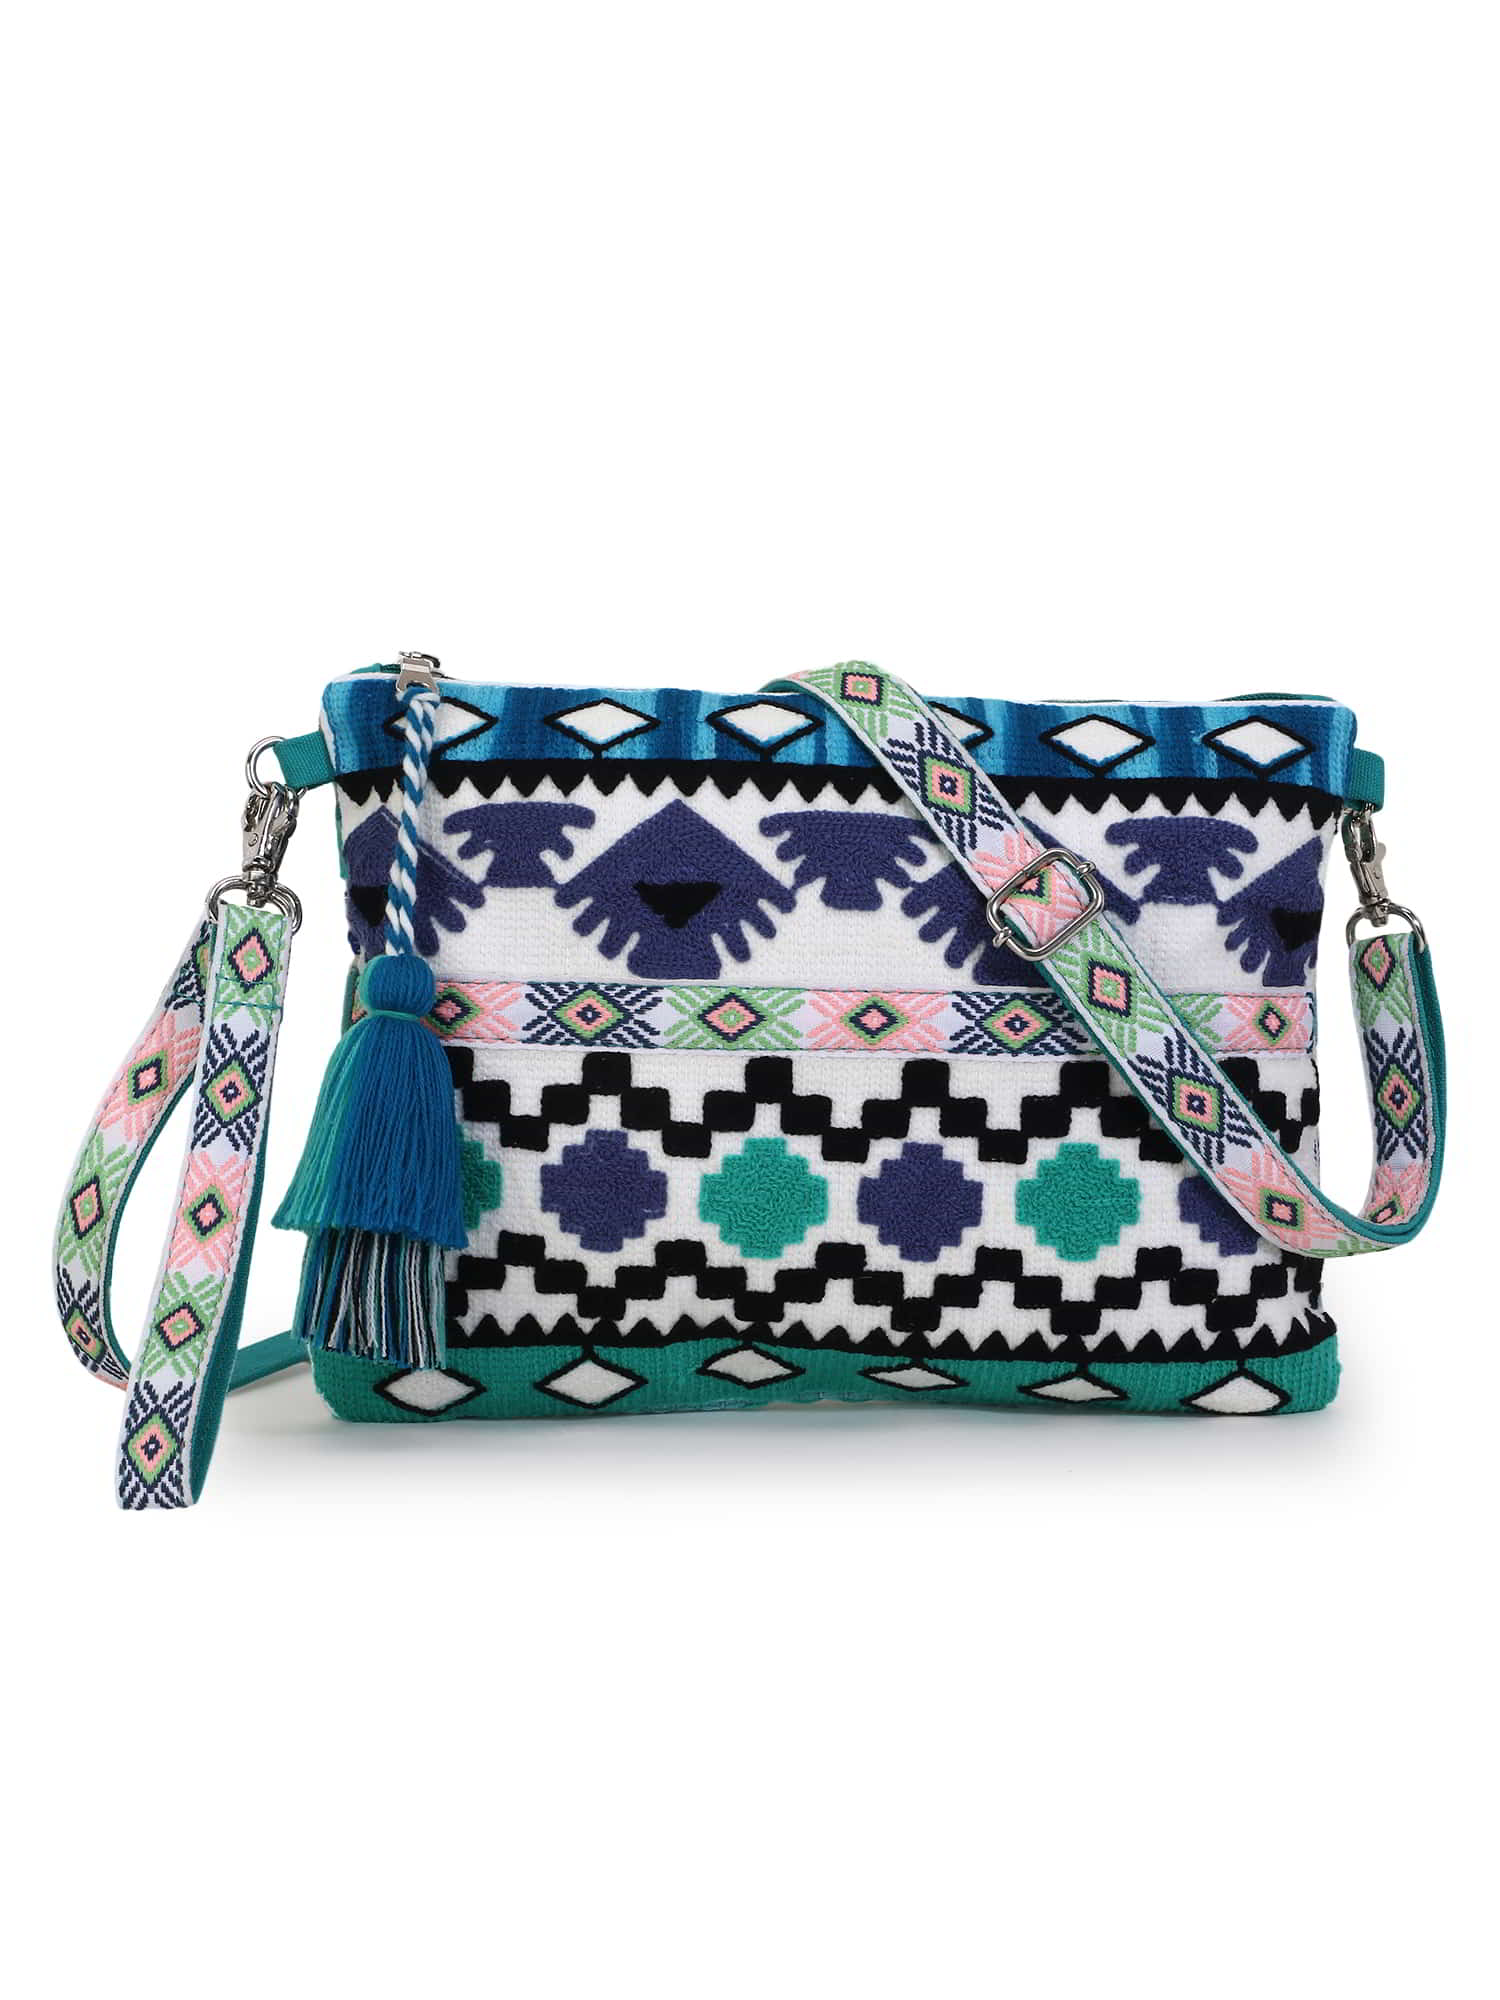 Buy Anekaant Multi-Color Stripes Canvas Handbags online